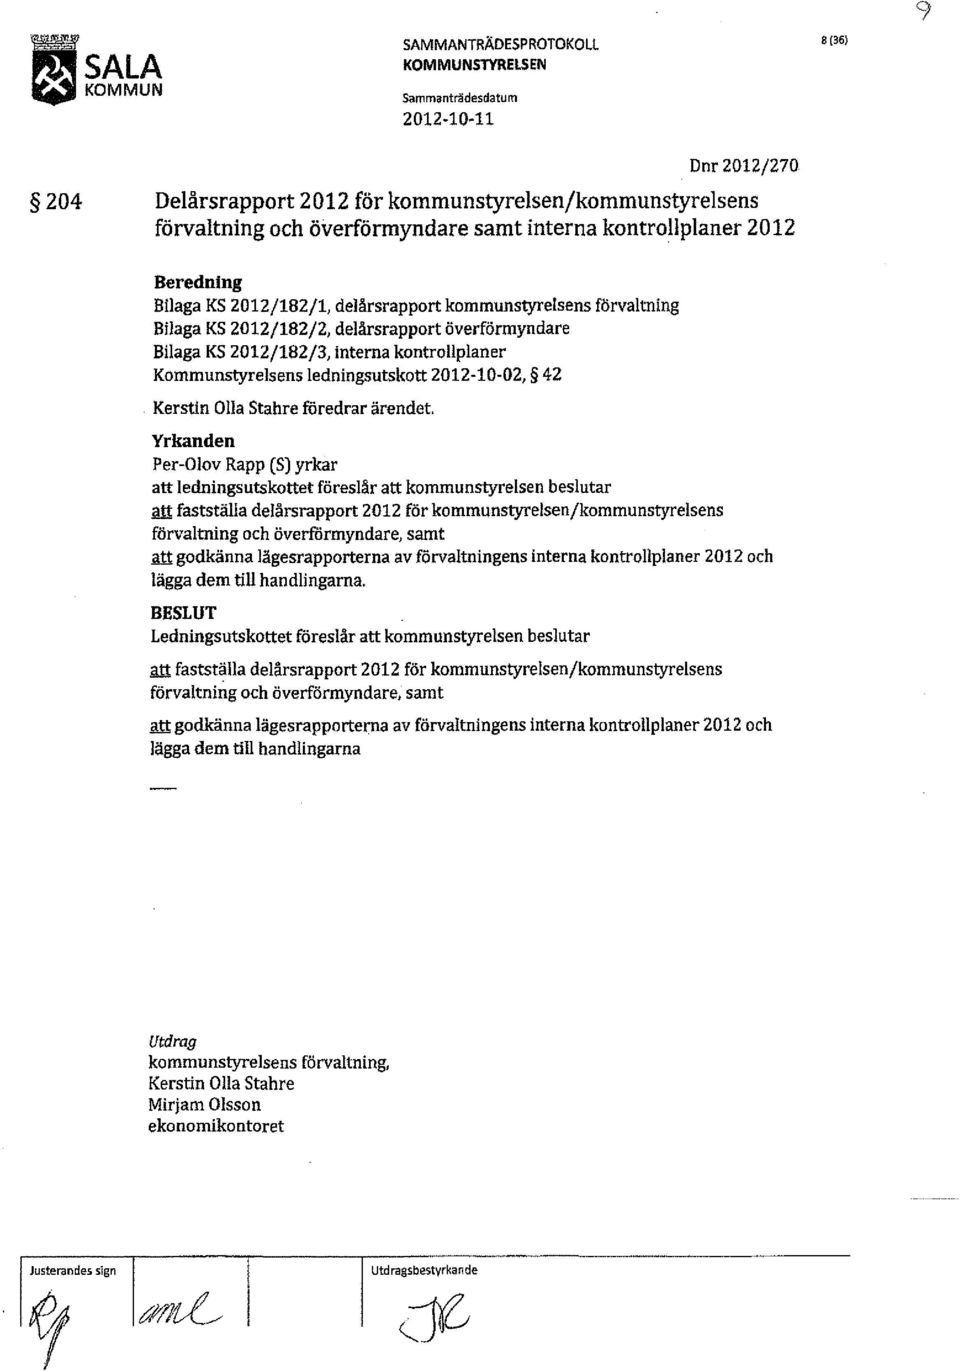 Kommunstyrelsens ledningsutskott 2012-10-02, 42 Kerstin lla Stahre föredrar ärendet.